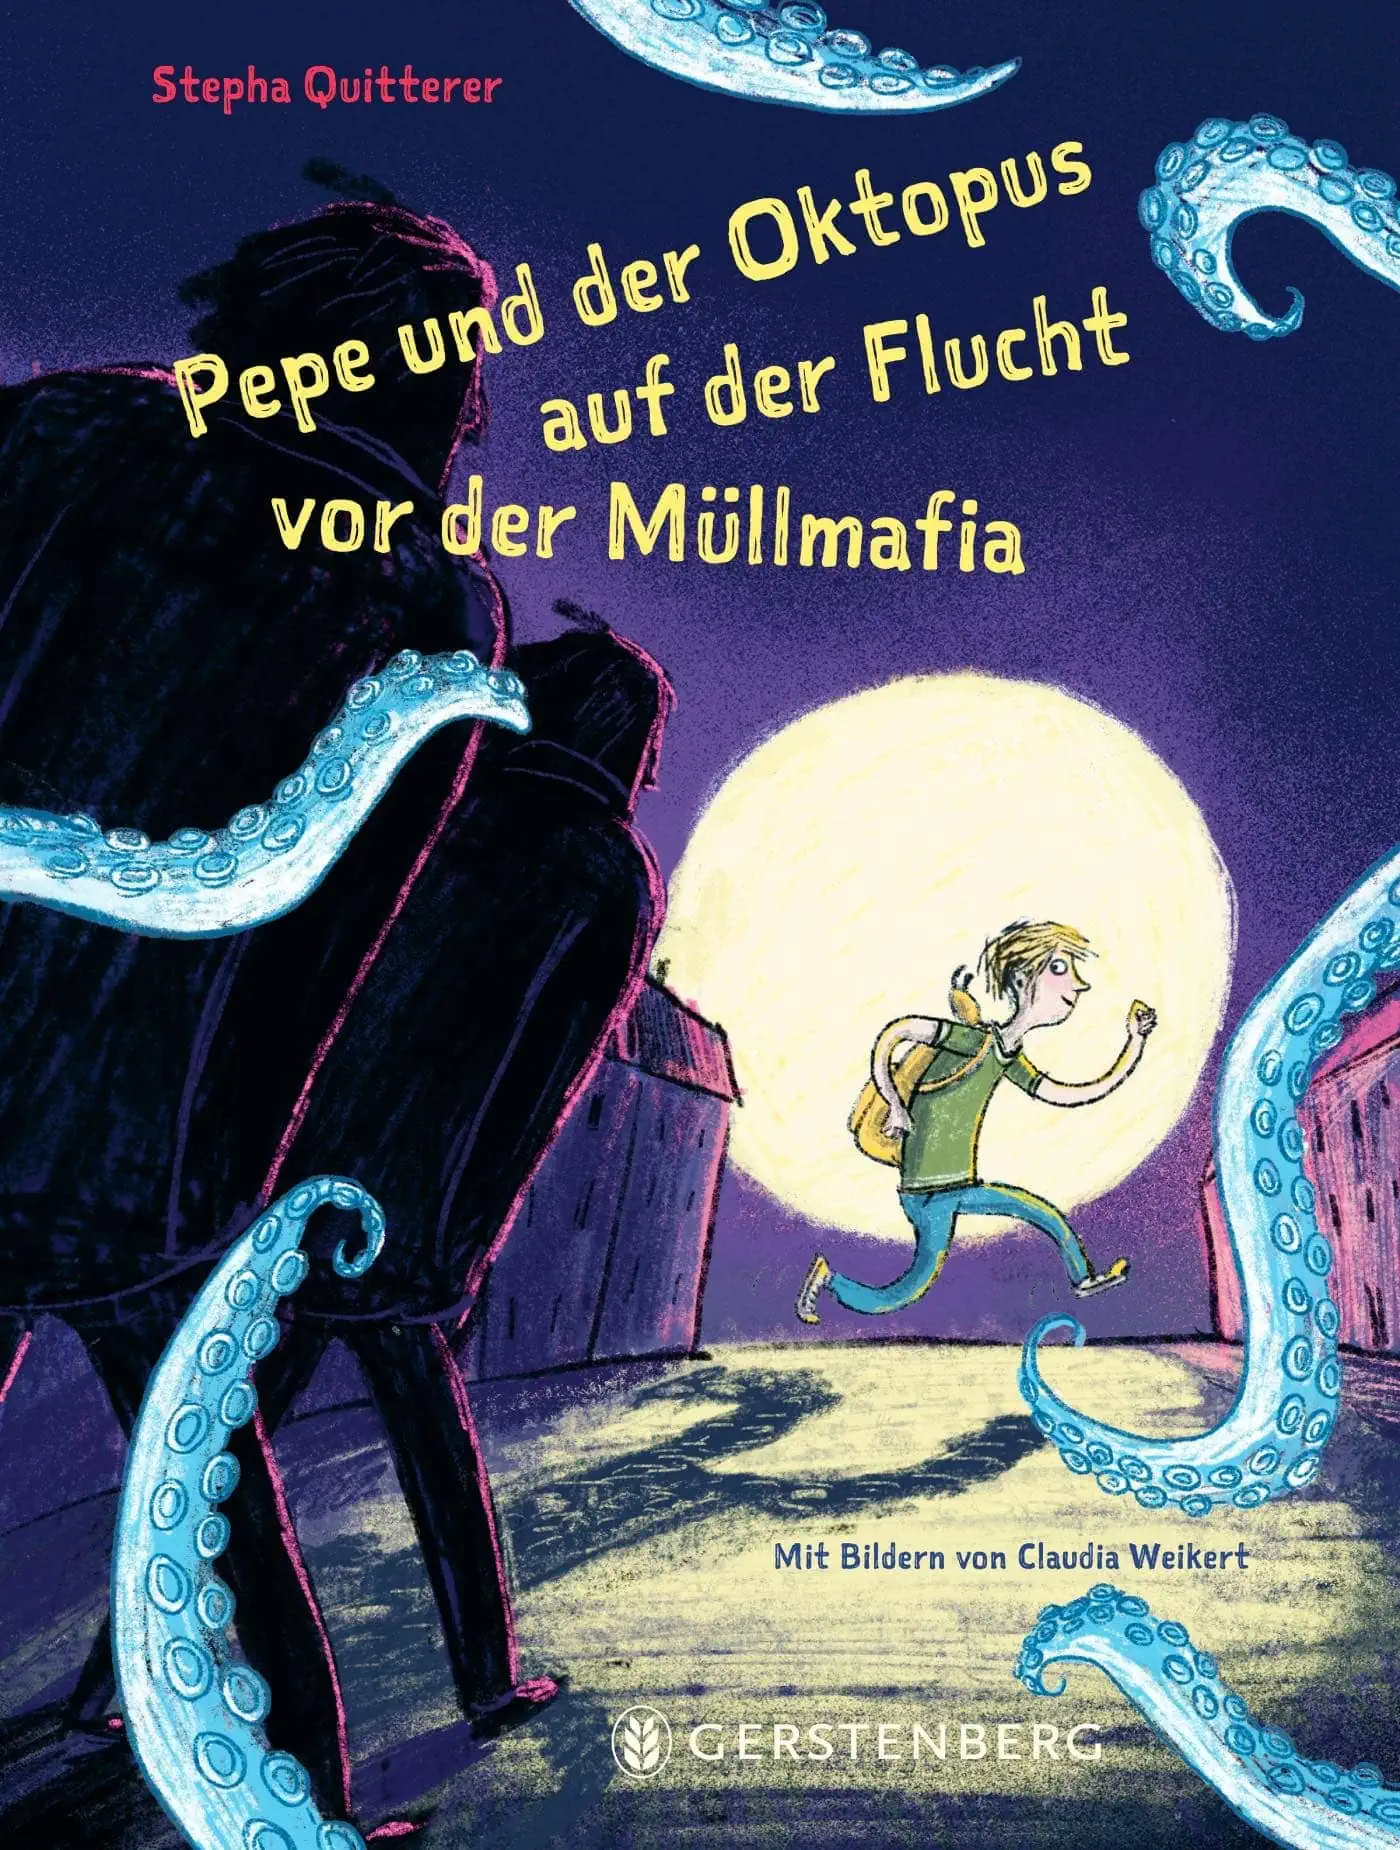 Kinderbuchtipps: Pepe und der Oktopus auf der Flucht vor der Müllmafia von Stepha Quitterer // HIMBEER